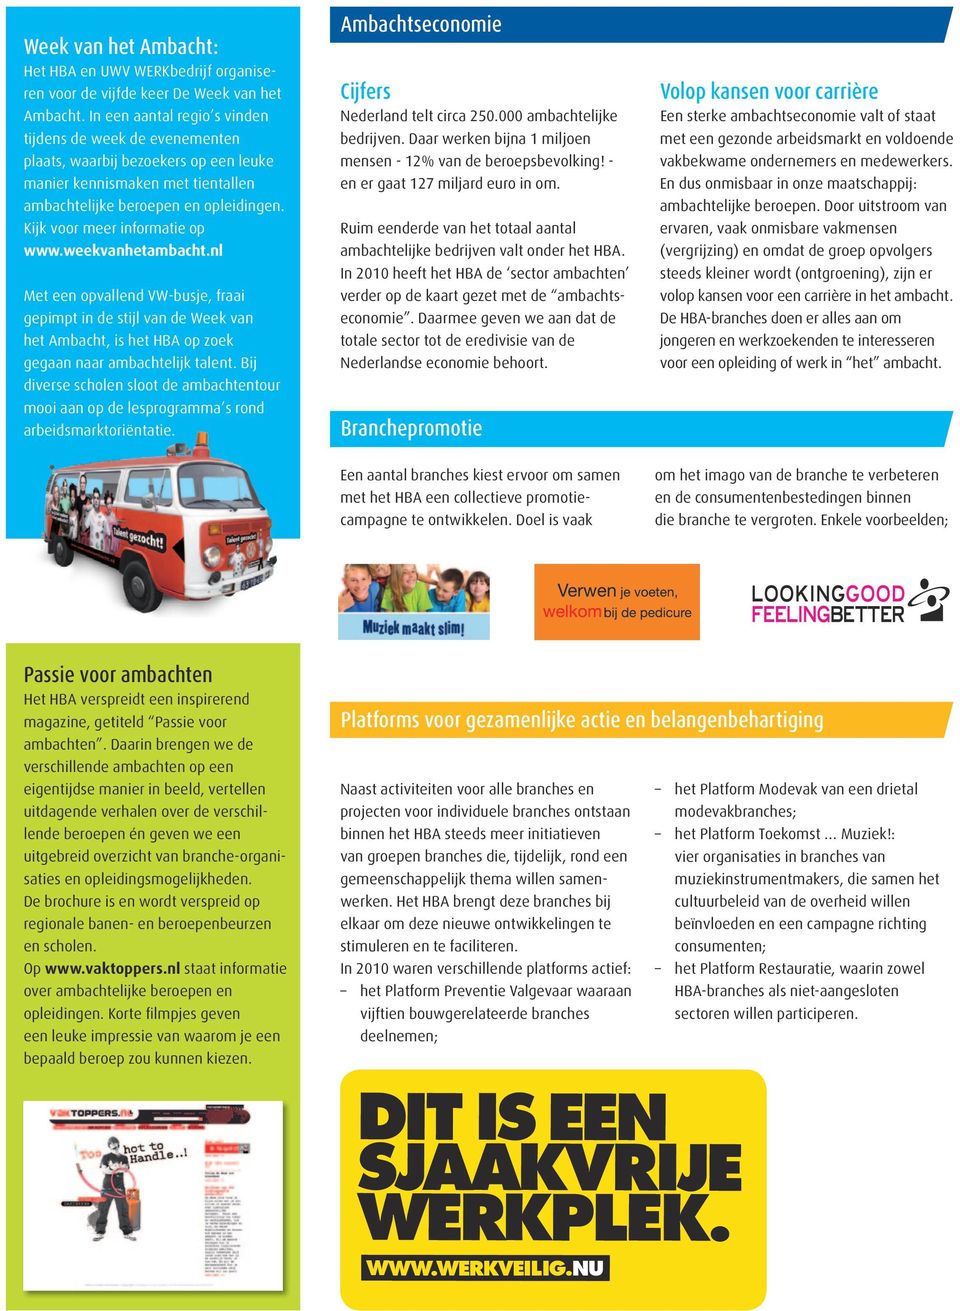 Kijk voor meer informatie op www.weekvanhetambacht.nl Met een opvallend VW-busje, fraai gepimpt in de stijl van de Week van het Ambacht, is het HBA op zoek gegaan naar ambachtelijk talent.